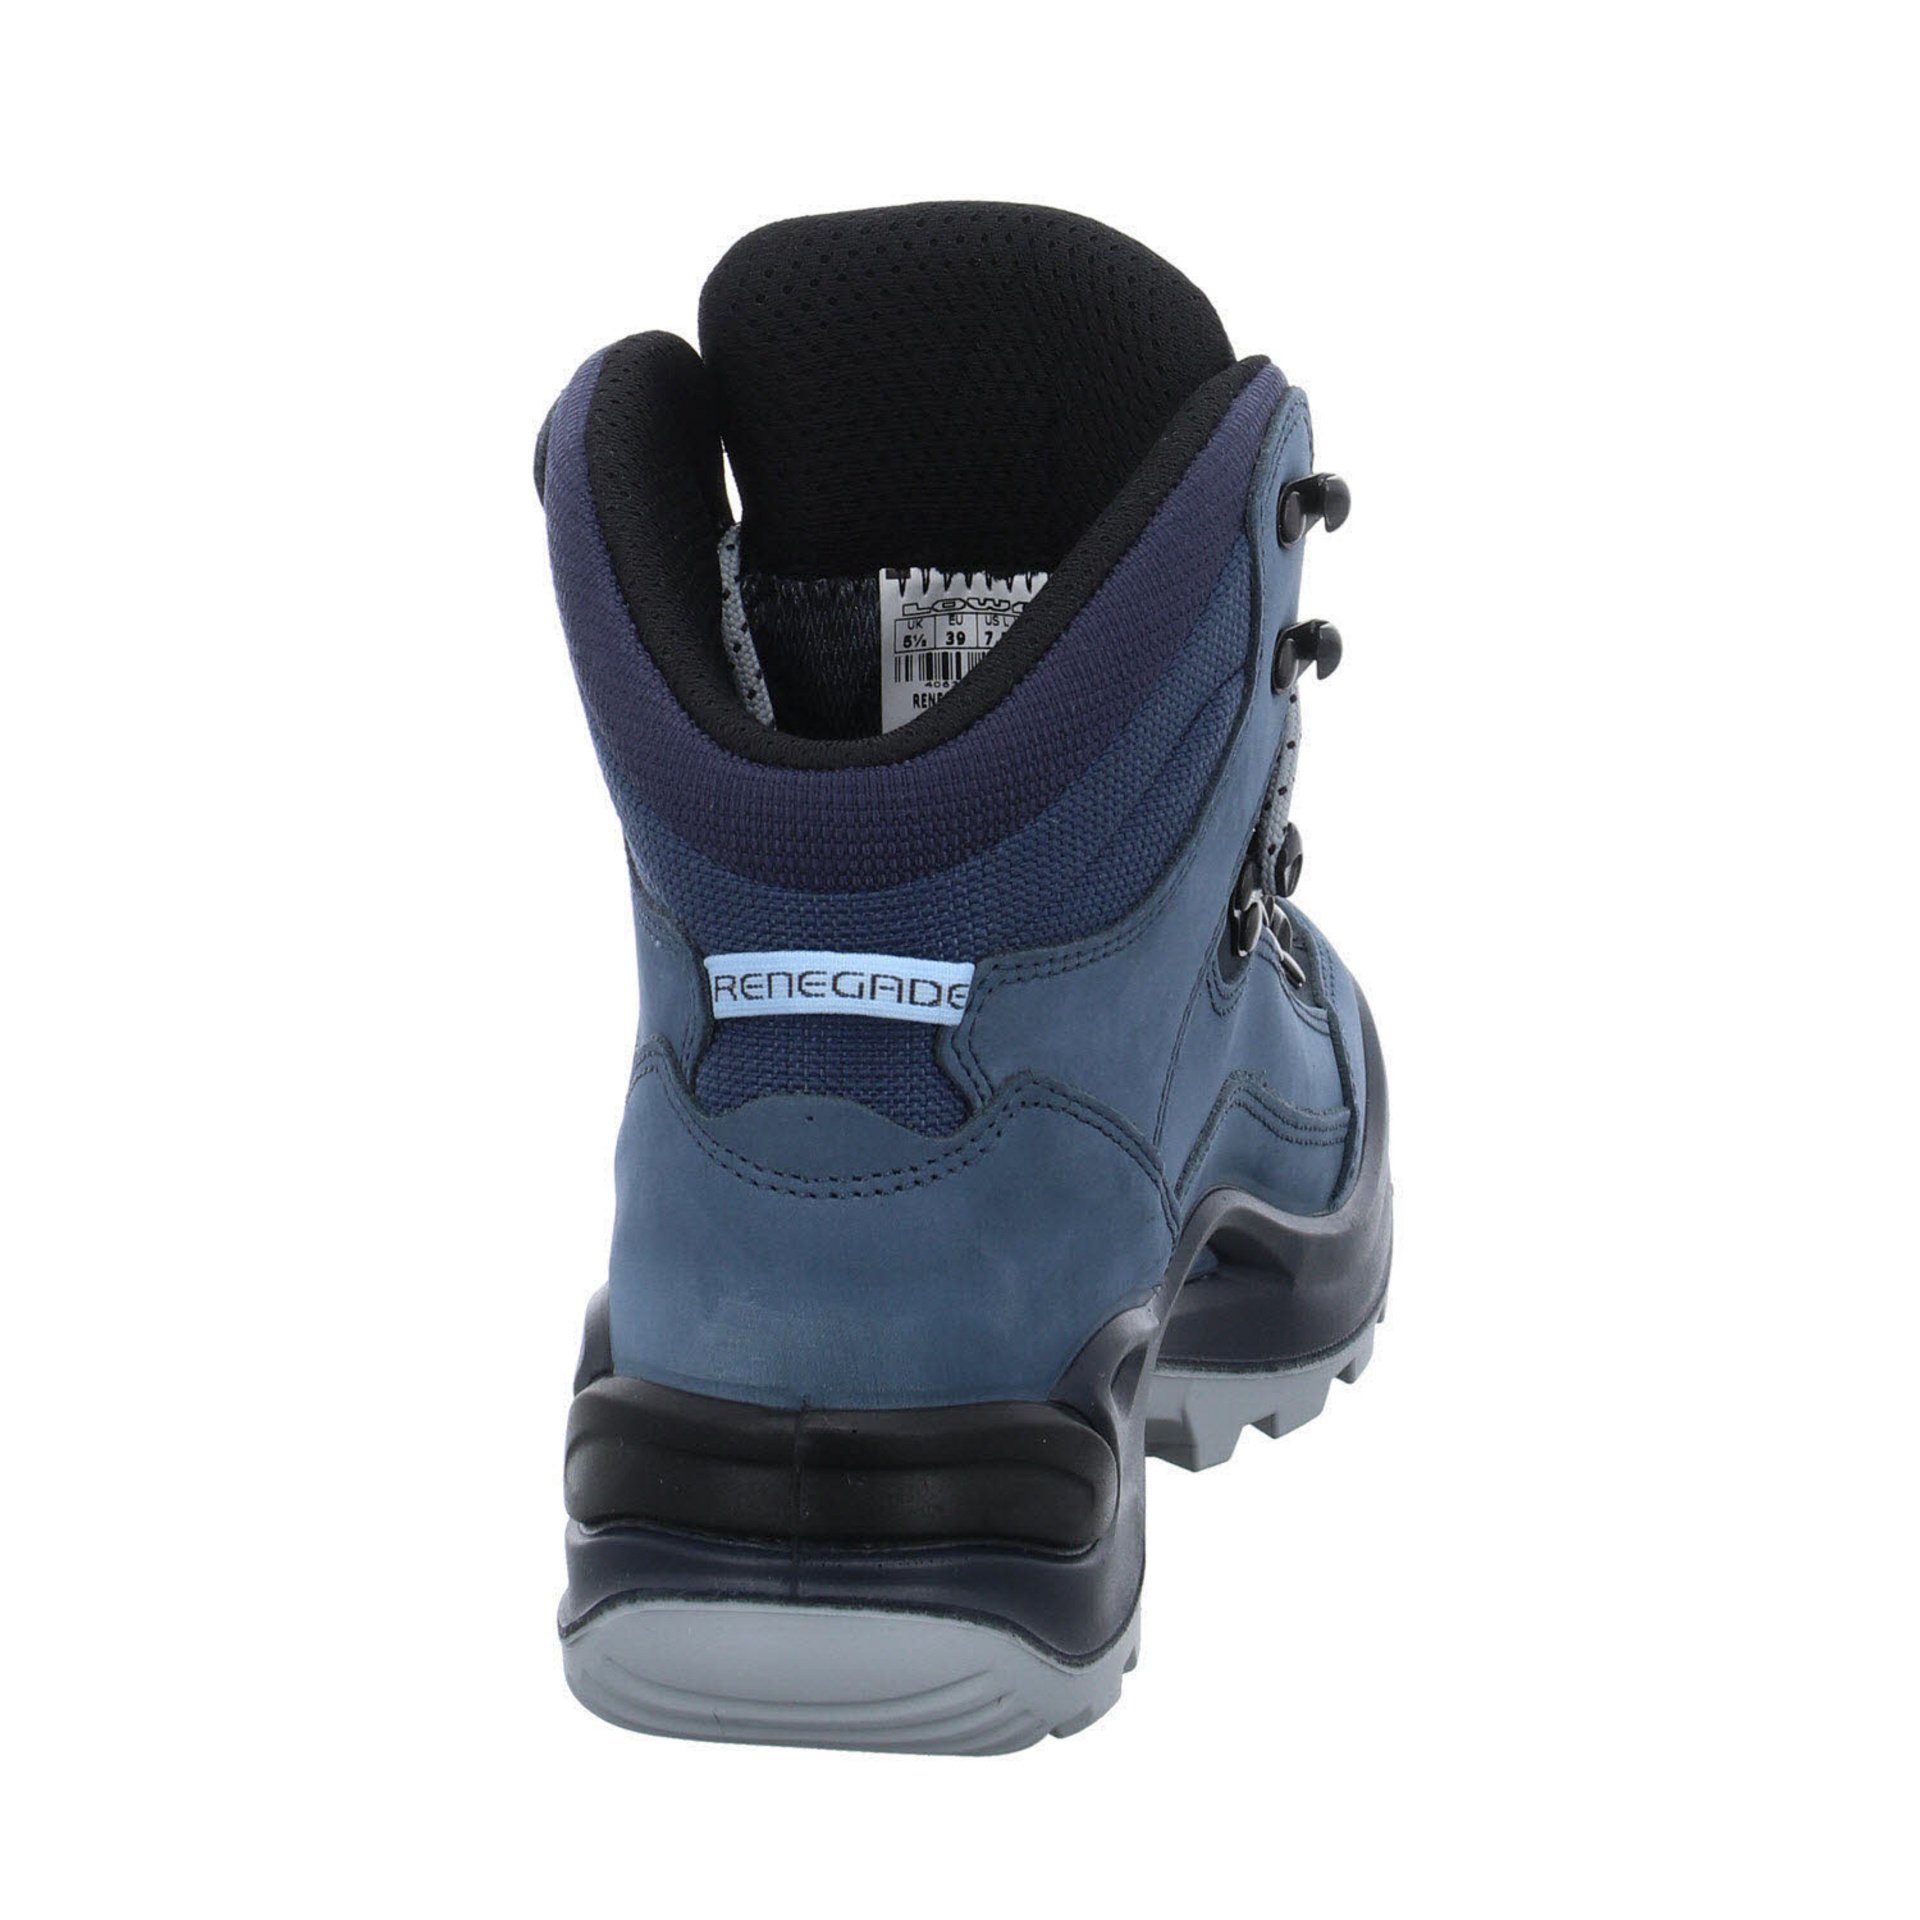 Outdoorschuh Outdoorschuh Damen blue Schuhe GTX mid Outdoor Leder-/Textilkombination Lowa smoke Renegade